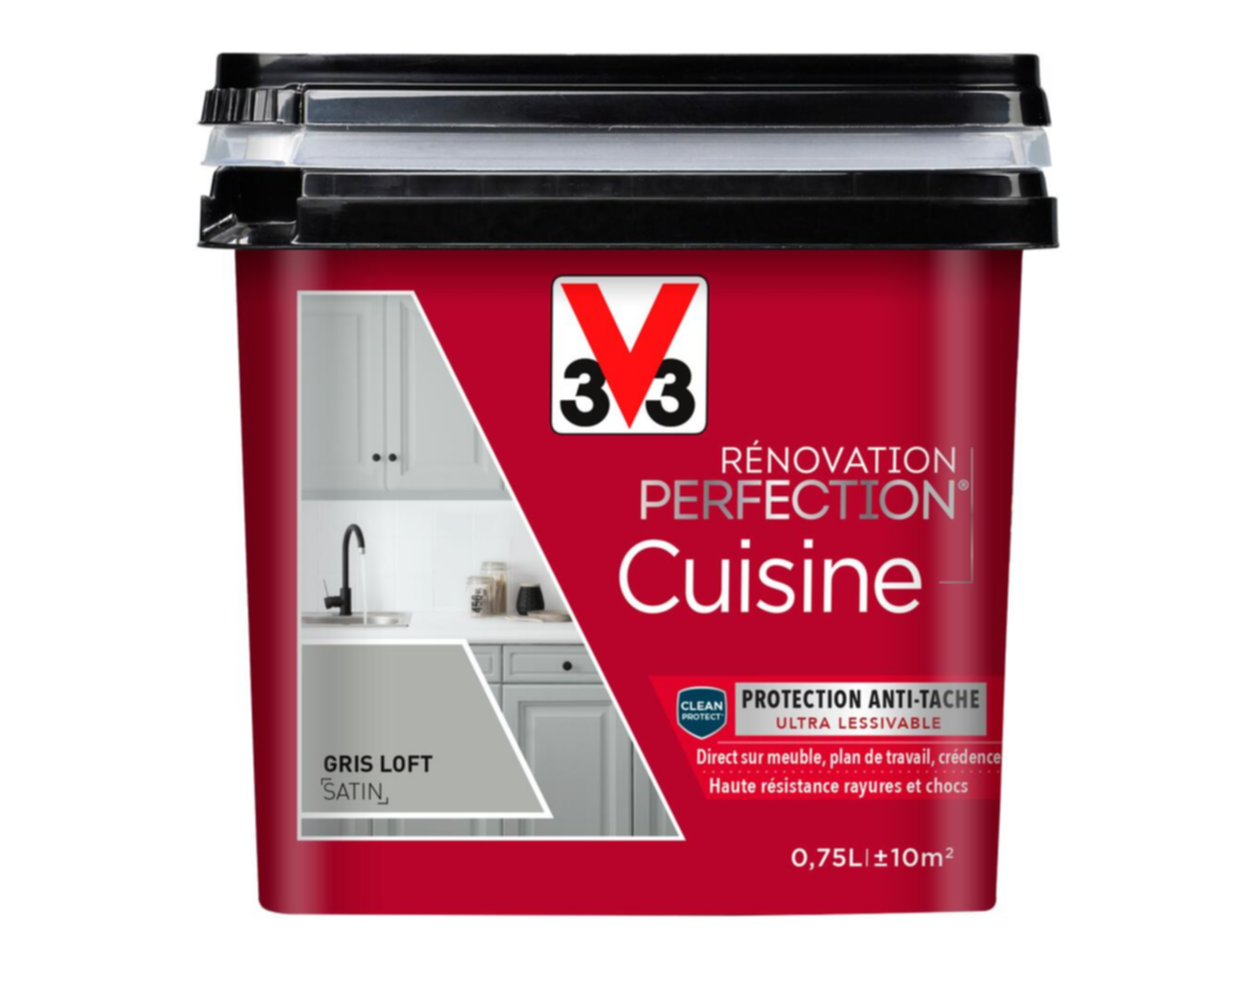 Peinture rénovation cuisine Perfection gris loft satin 0,75l - V33